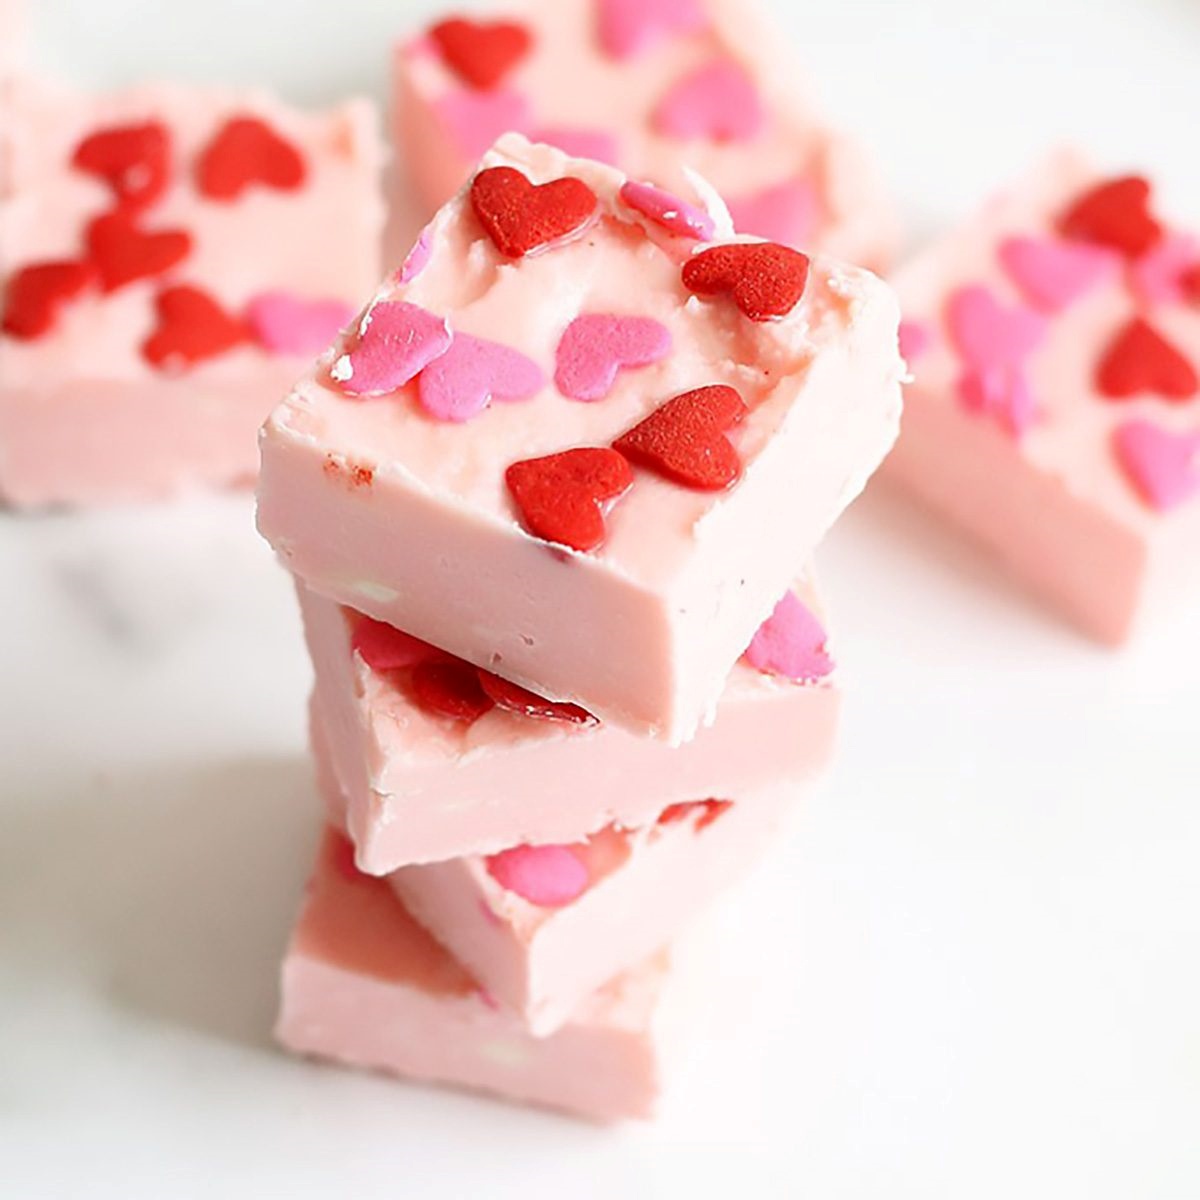 desserts zum valentinstag erdbeeren fudge mit kleinen herzen